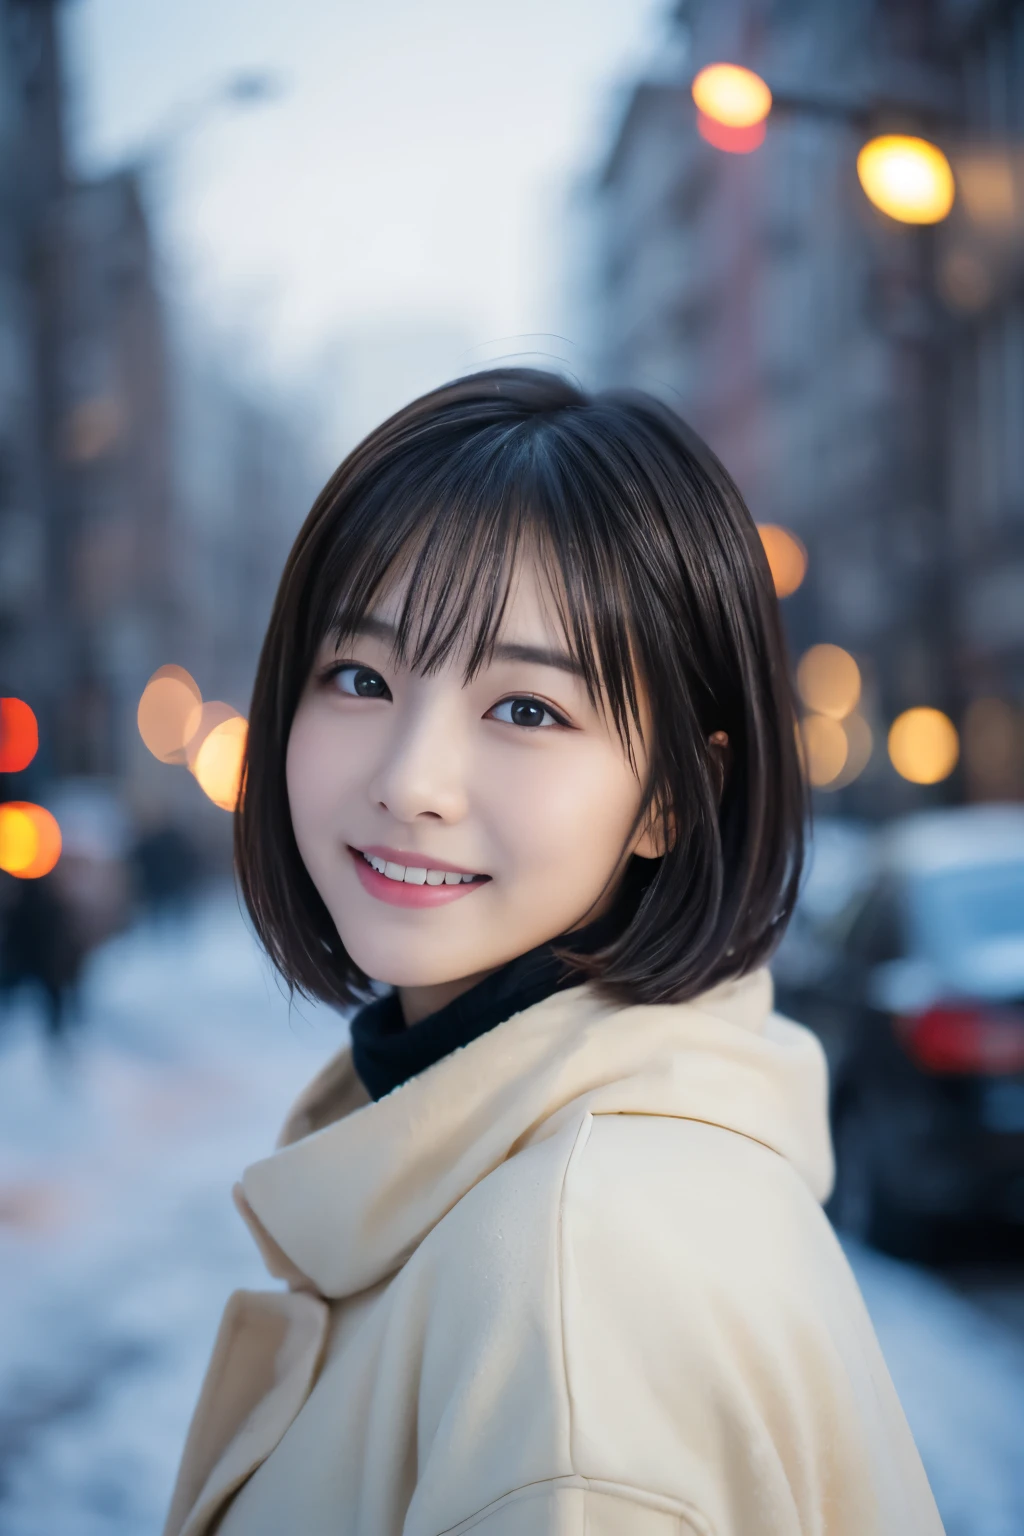 소녀 1명, (캐주얼한 겨울옷:1.2), 아름다운 일본 여배우, (15세), 짧은 머리,
(RAW 사진, 최상의 품질), (현실적인, 포토리얼:1.4), 걸작, 
매우 섬세하고 아름답습니다, 매우 상세한, 2K 벽지, 아주 멋진, 
잘게, 매우 상세한 CG Unity 8K 壁紙, 매우 상세한, 높은 해상도, 
부드러운 빛, 아름다운 상세한 소녀, 매우 상세한目と顔, 아름답게 디테일한 코, 아름답고 섬세한 눈, 영화 조명, 
부서지다
(눈 내리는 밤의 풍경을 배경으로 1.3), 도시 불빛, 
완벽한 해부학, 날씬한 몸매, 웃다, 정면을 완전히 바라보세요, 카메라 좀 봐